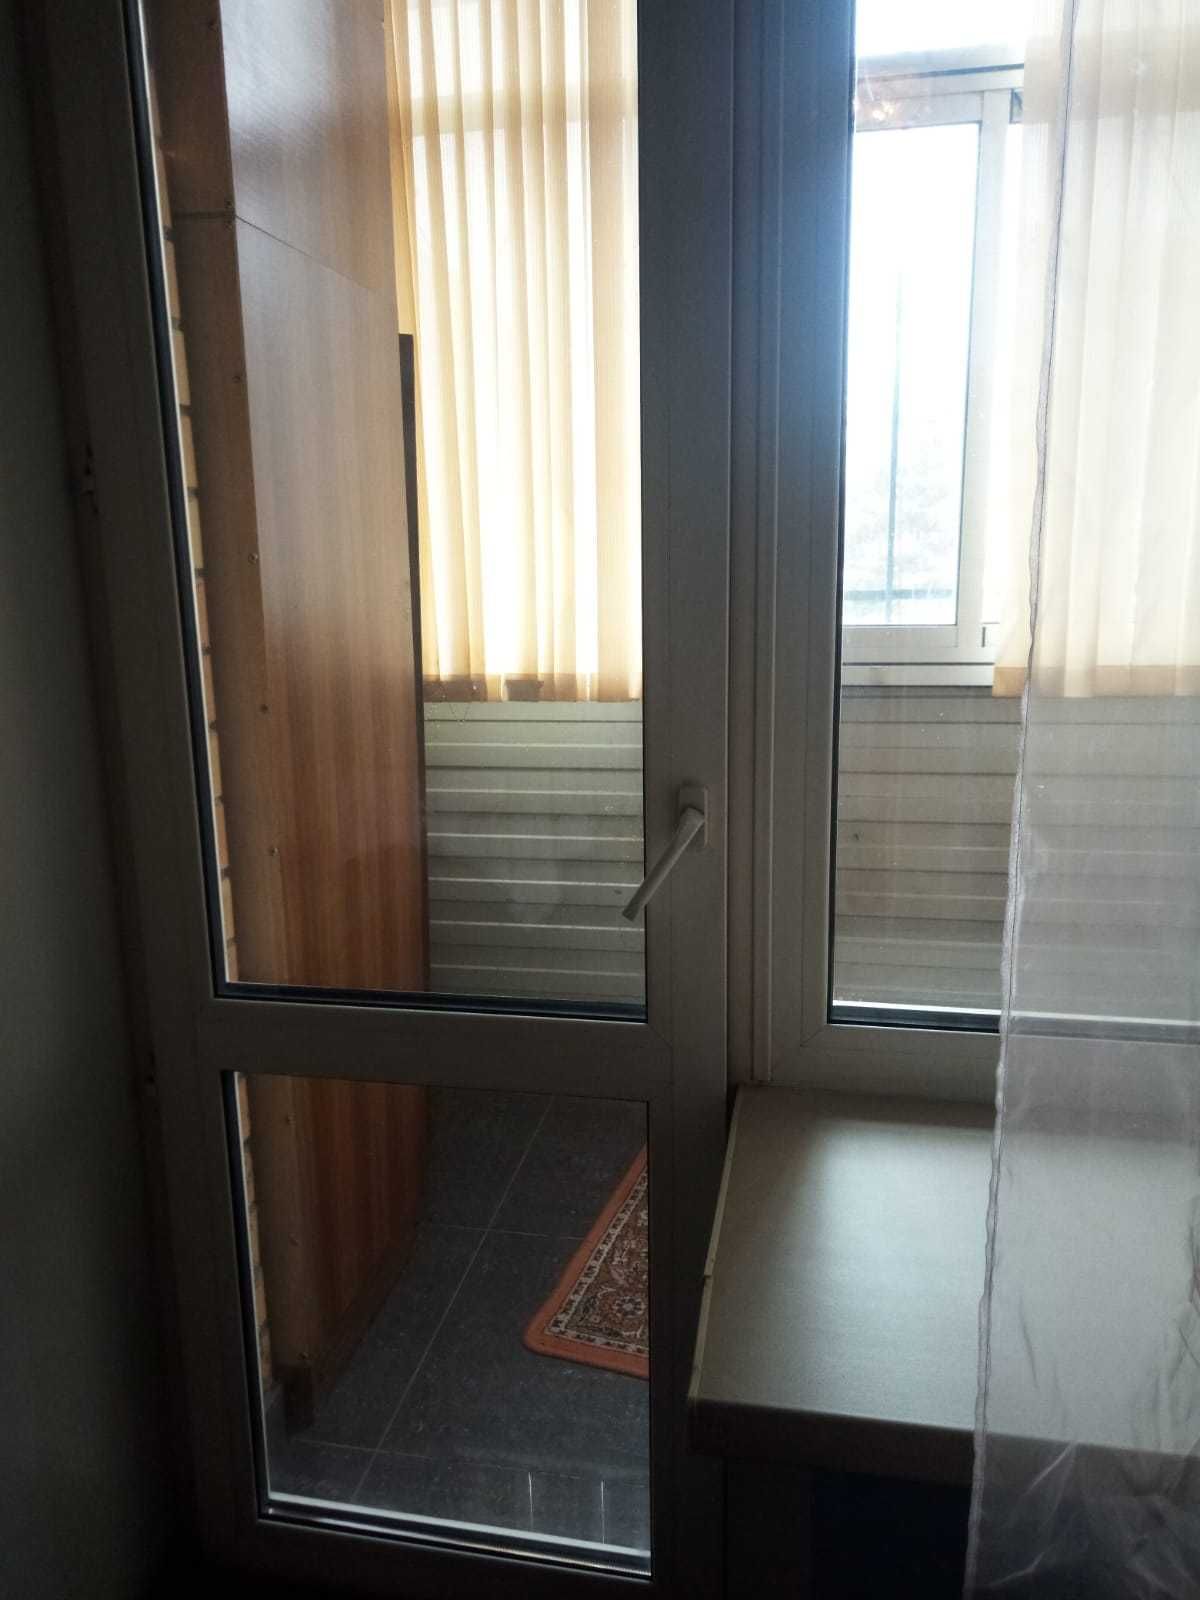 Продается 3х комнатная квартира на Наурызе на 2 этаже